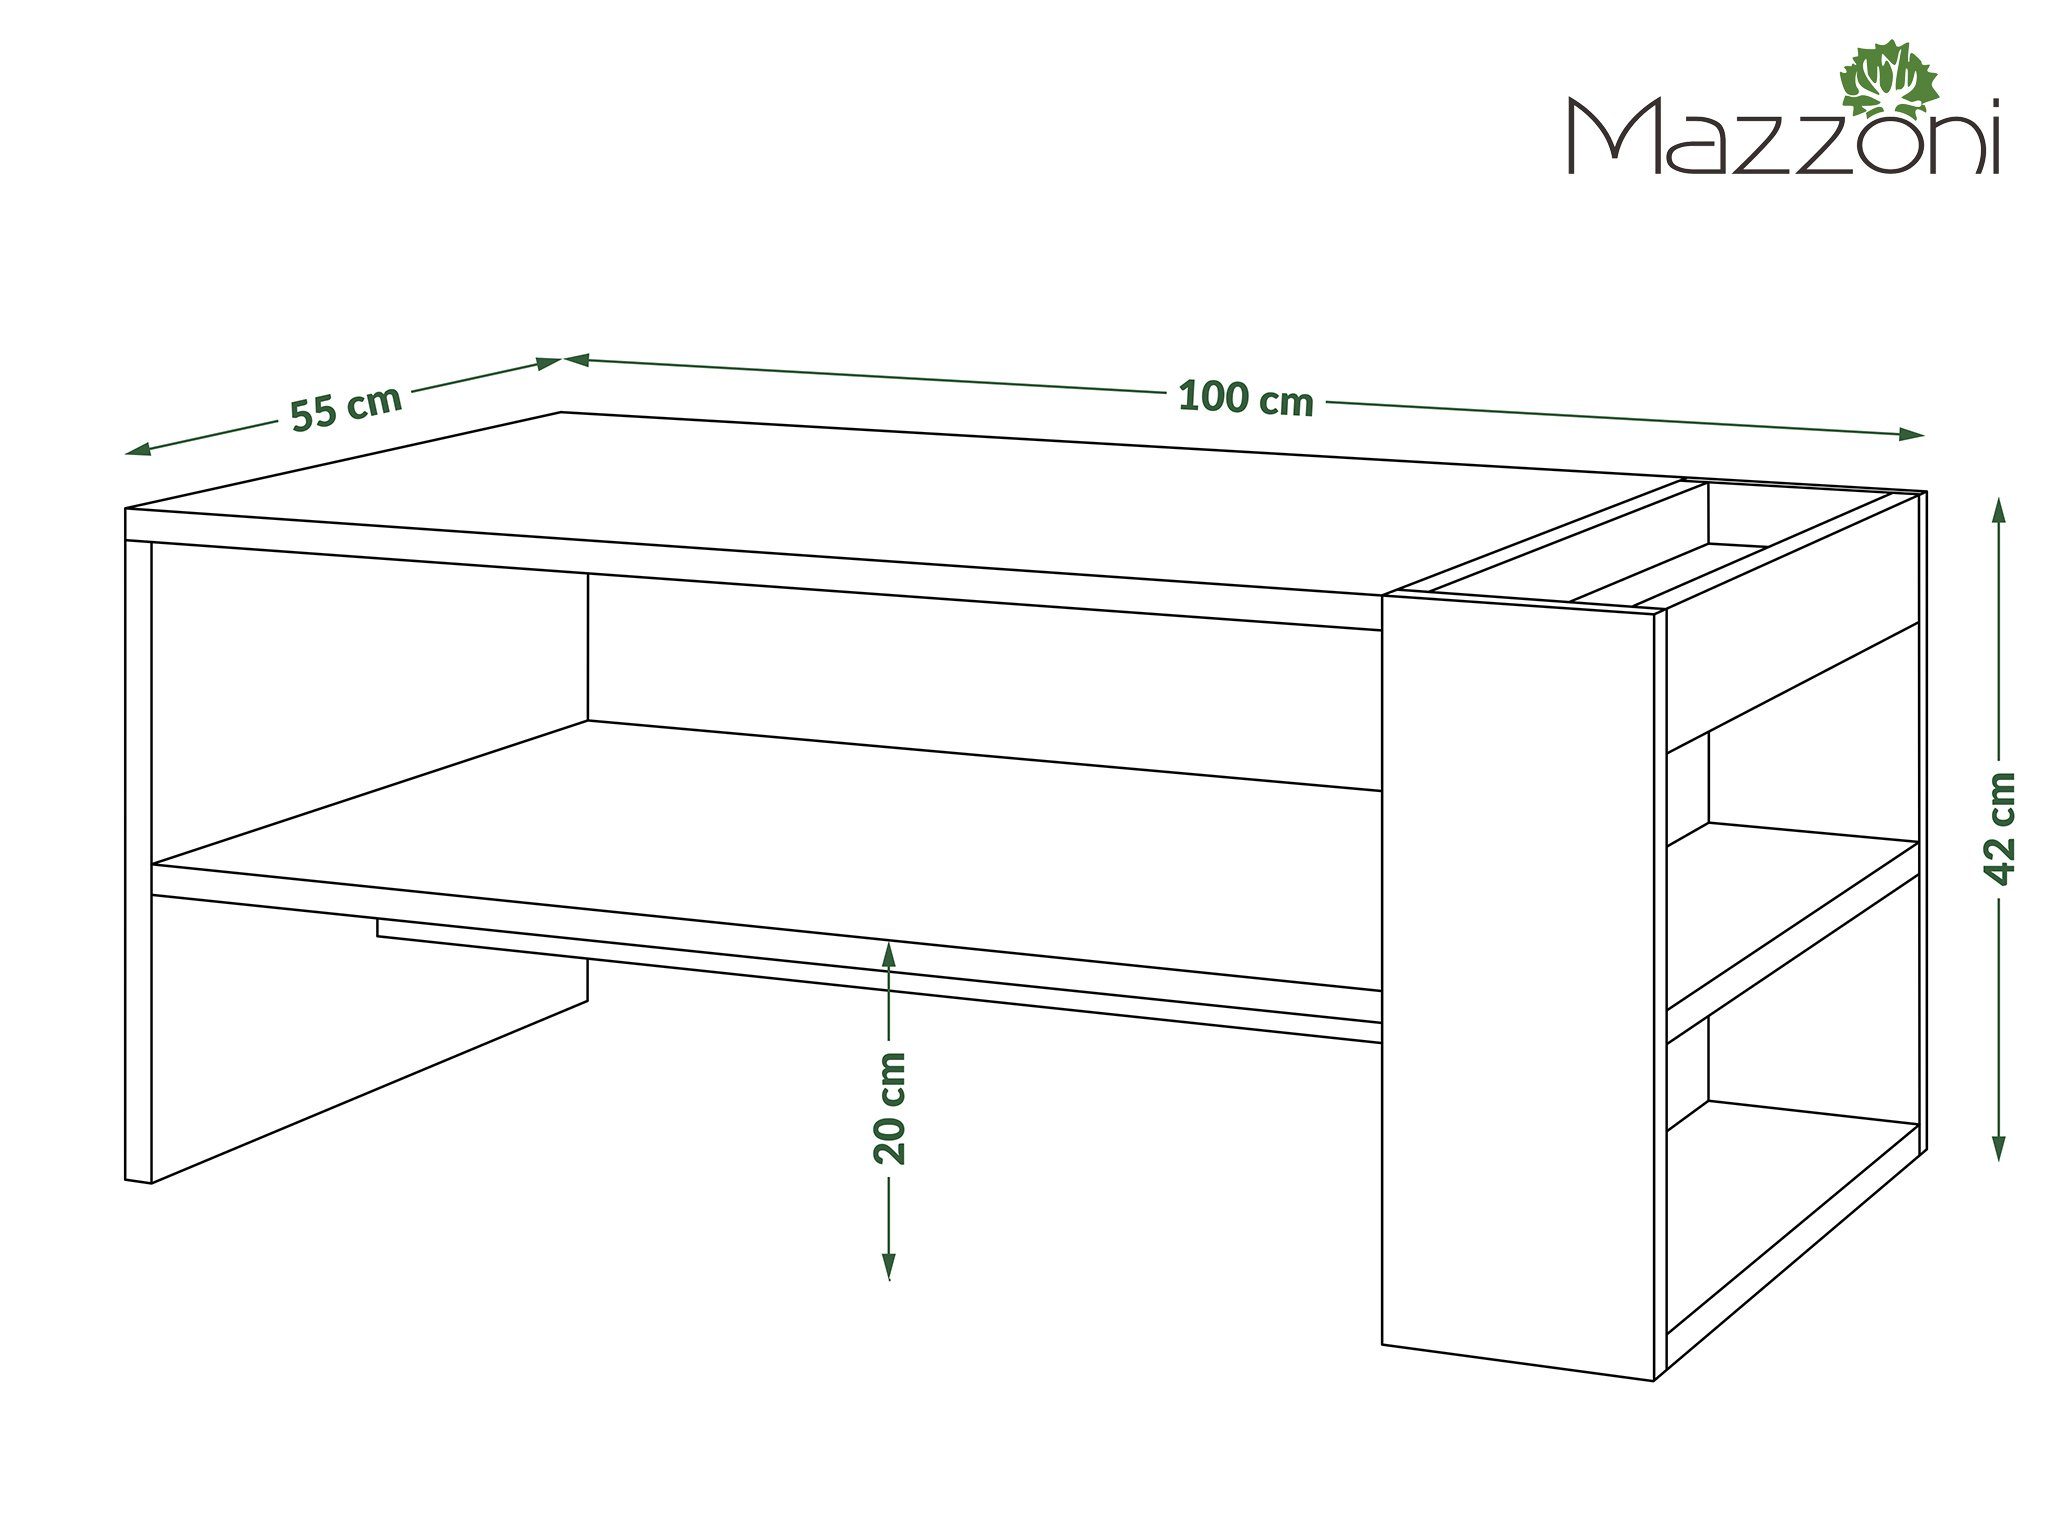 Couchtisch matt Wohnzimmertisch designimpex Tisch Design Nefri Schwarz / Sonoma Couchtisch mit Eiche Ablagefläche